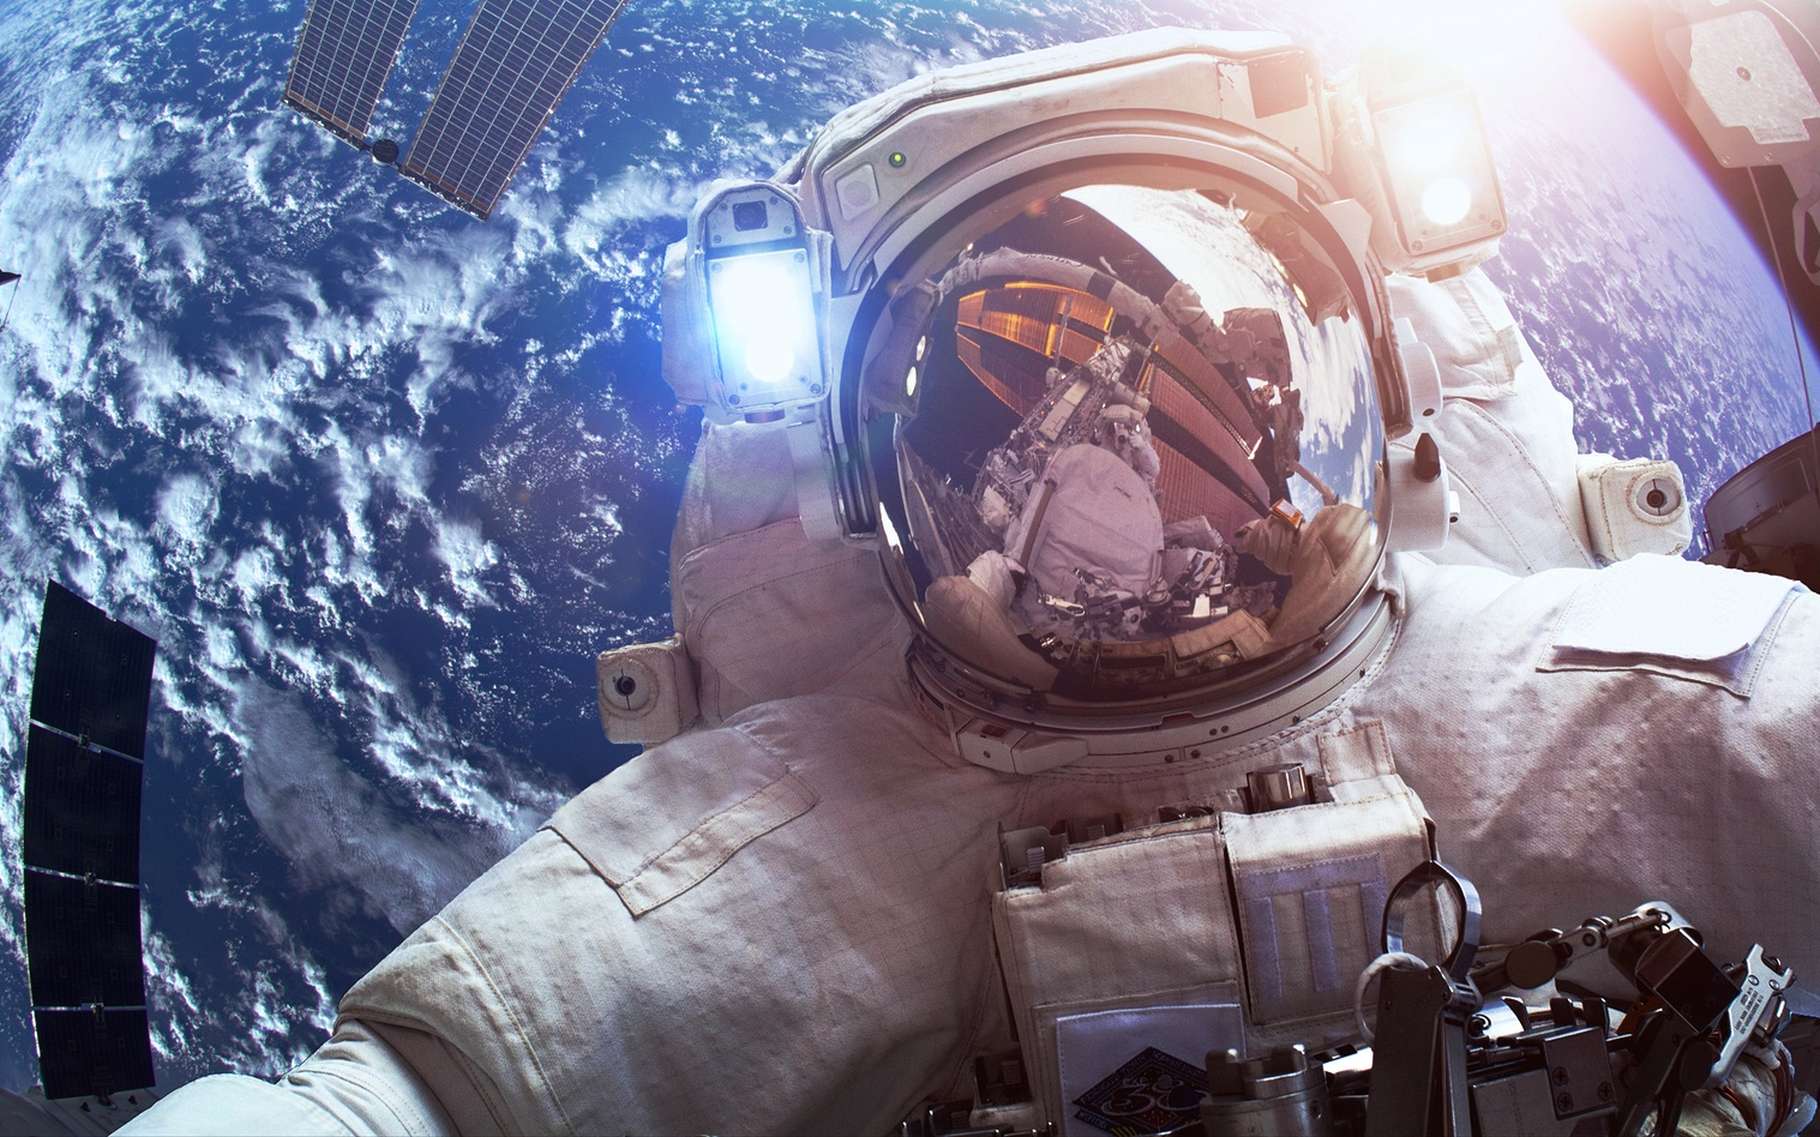 La vue des astronautes a tendance à se dégrader lorsqu'ils restent longtemps dans l'espace. © Vadim Sadovski, Shutterstock